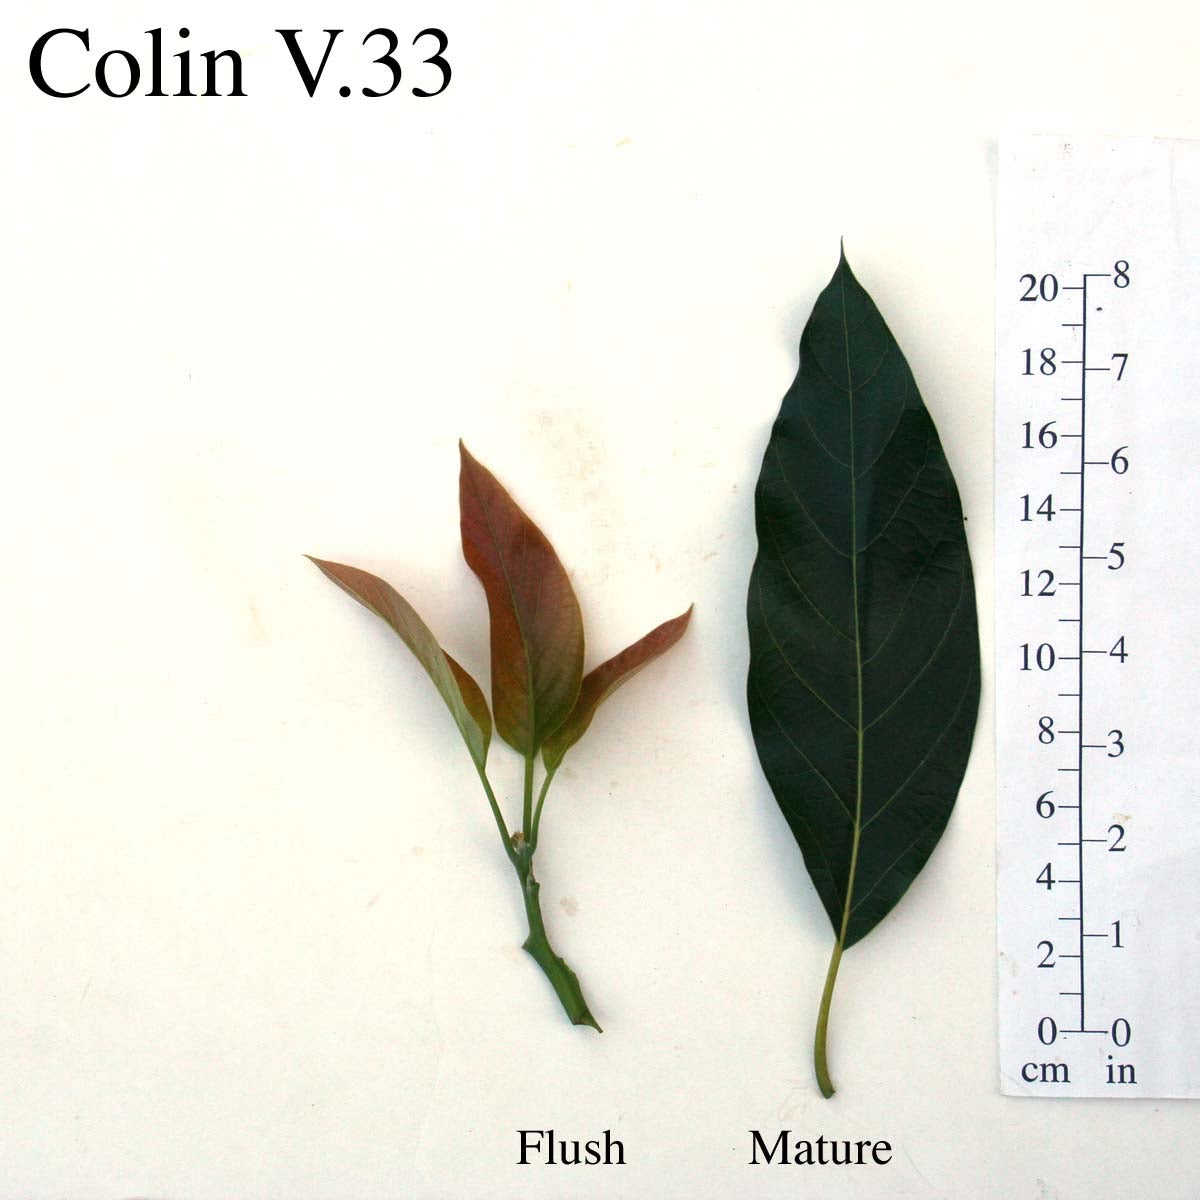 Colin V33 Leaves